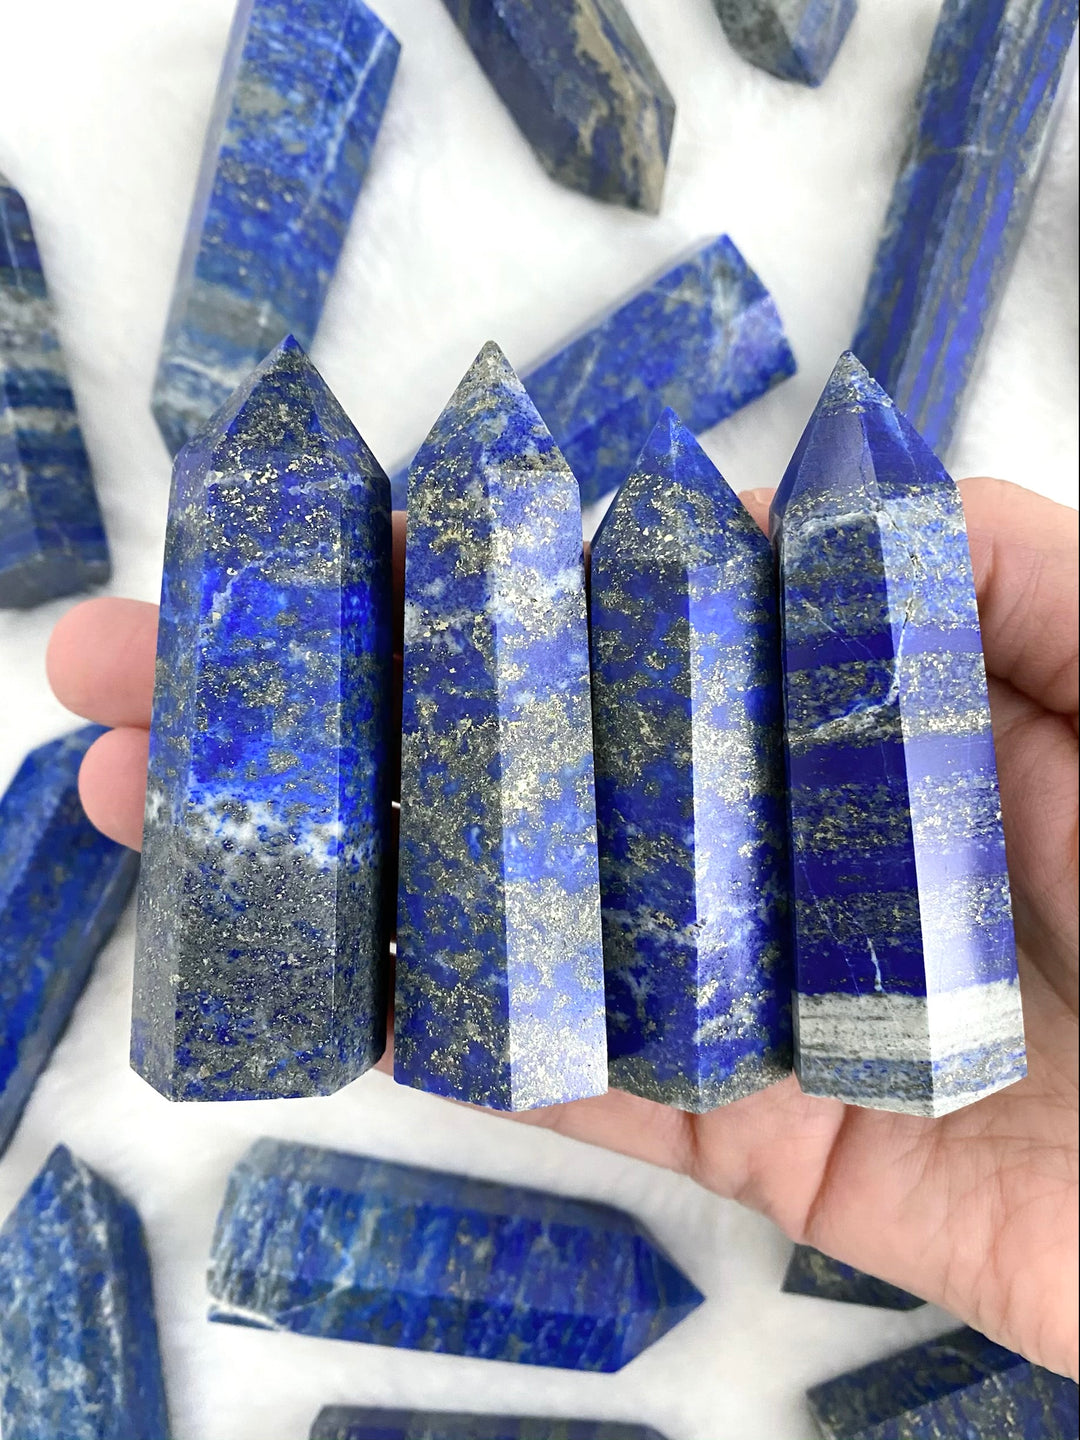 Lapis lazuli Towers